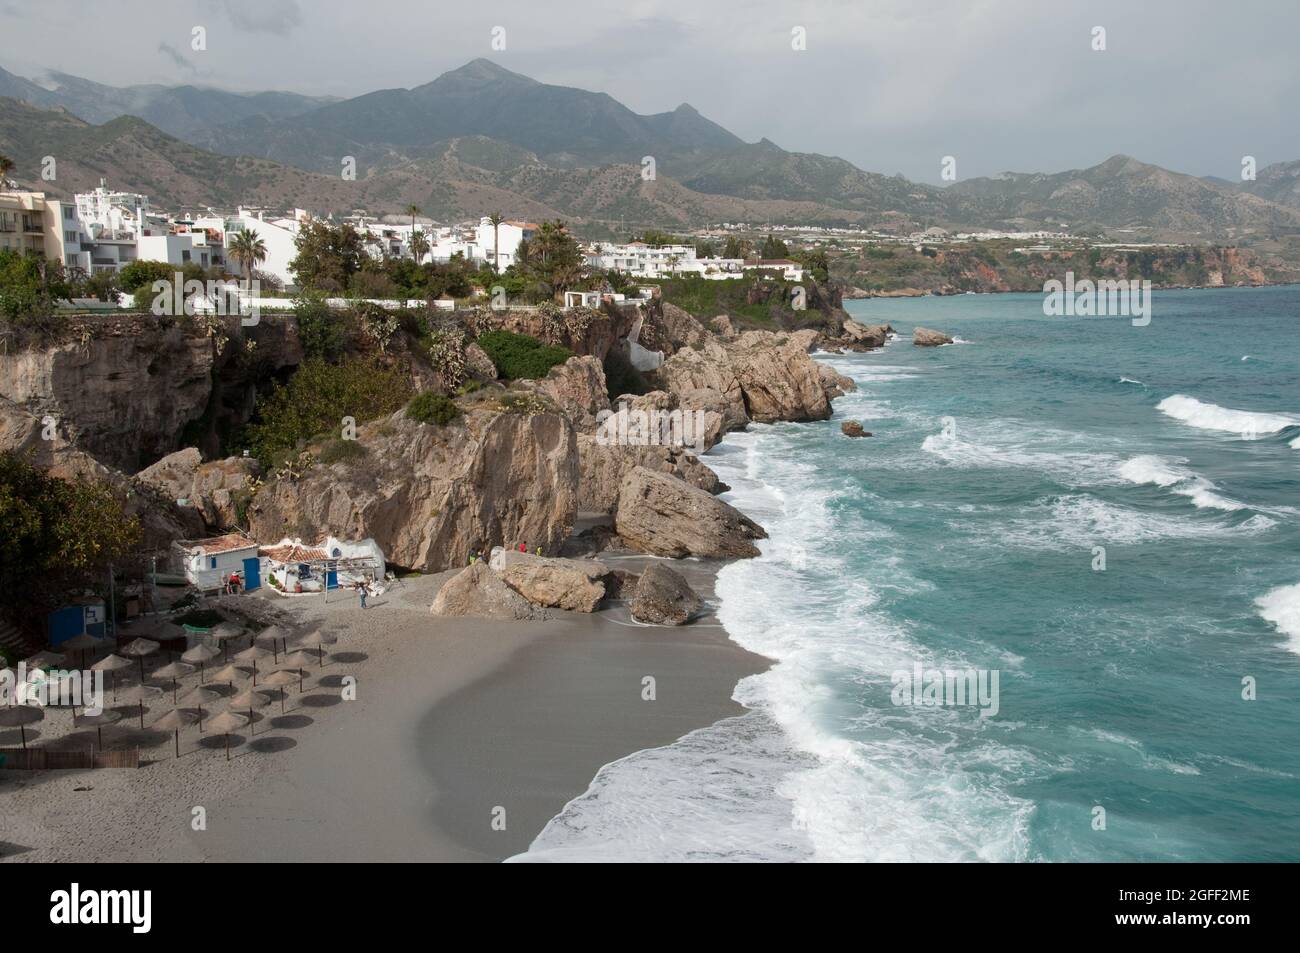 Plage avec montagnes en arrière-plan, Nerja, Costa del sol, province de Malaga, Andalousie, Espagne Banque D'Images